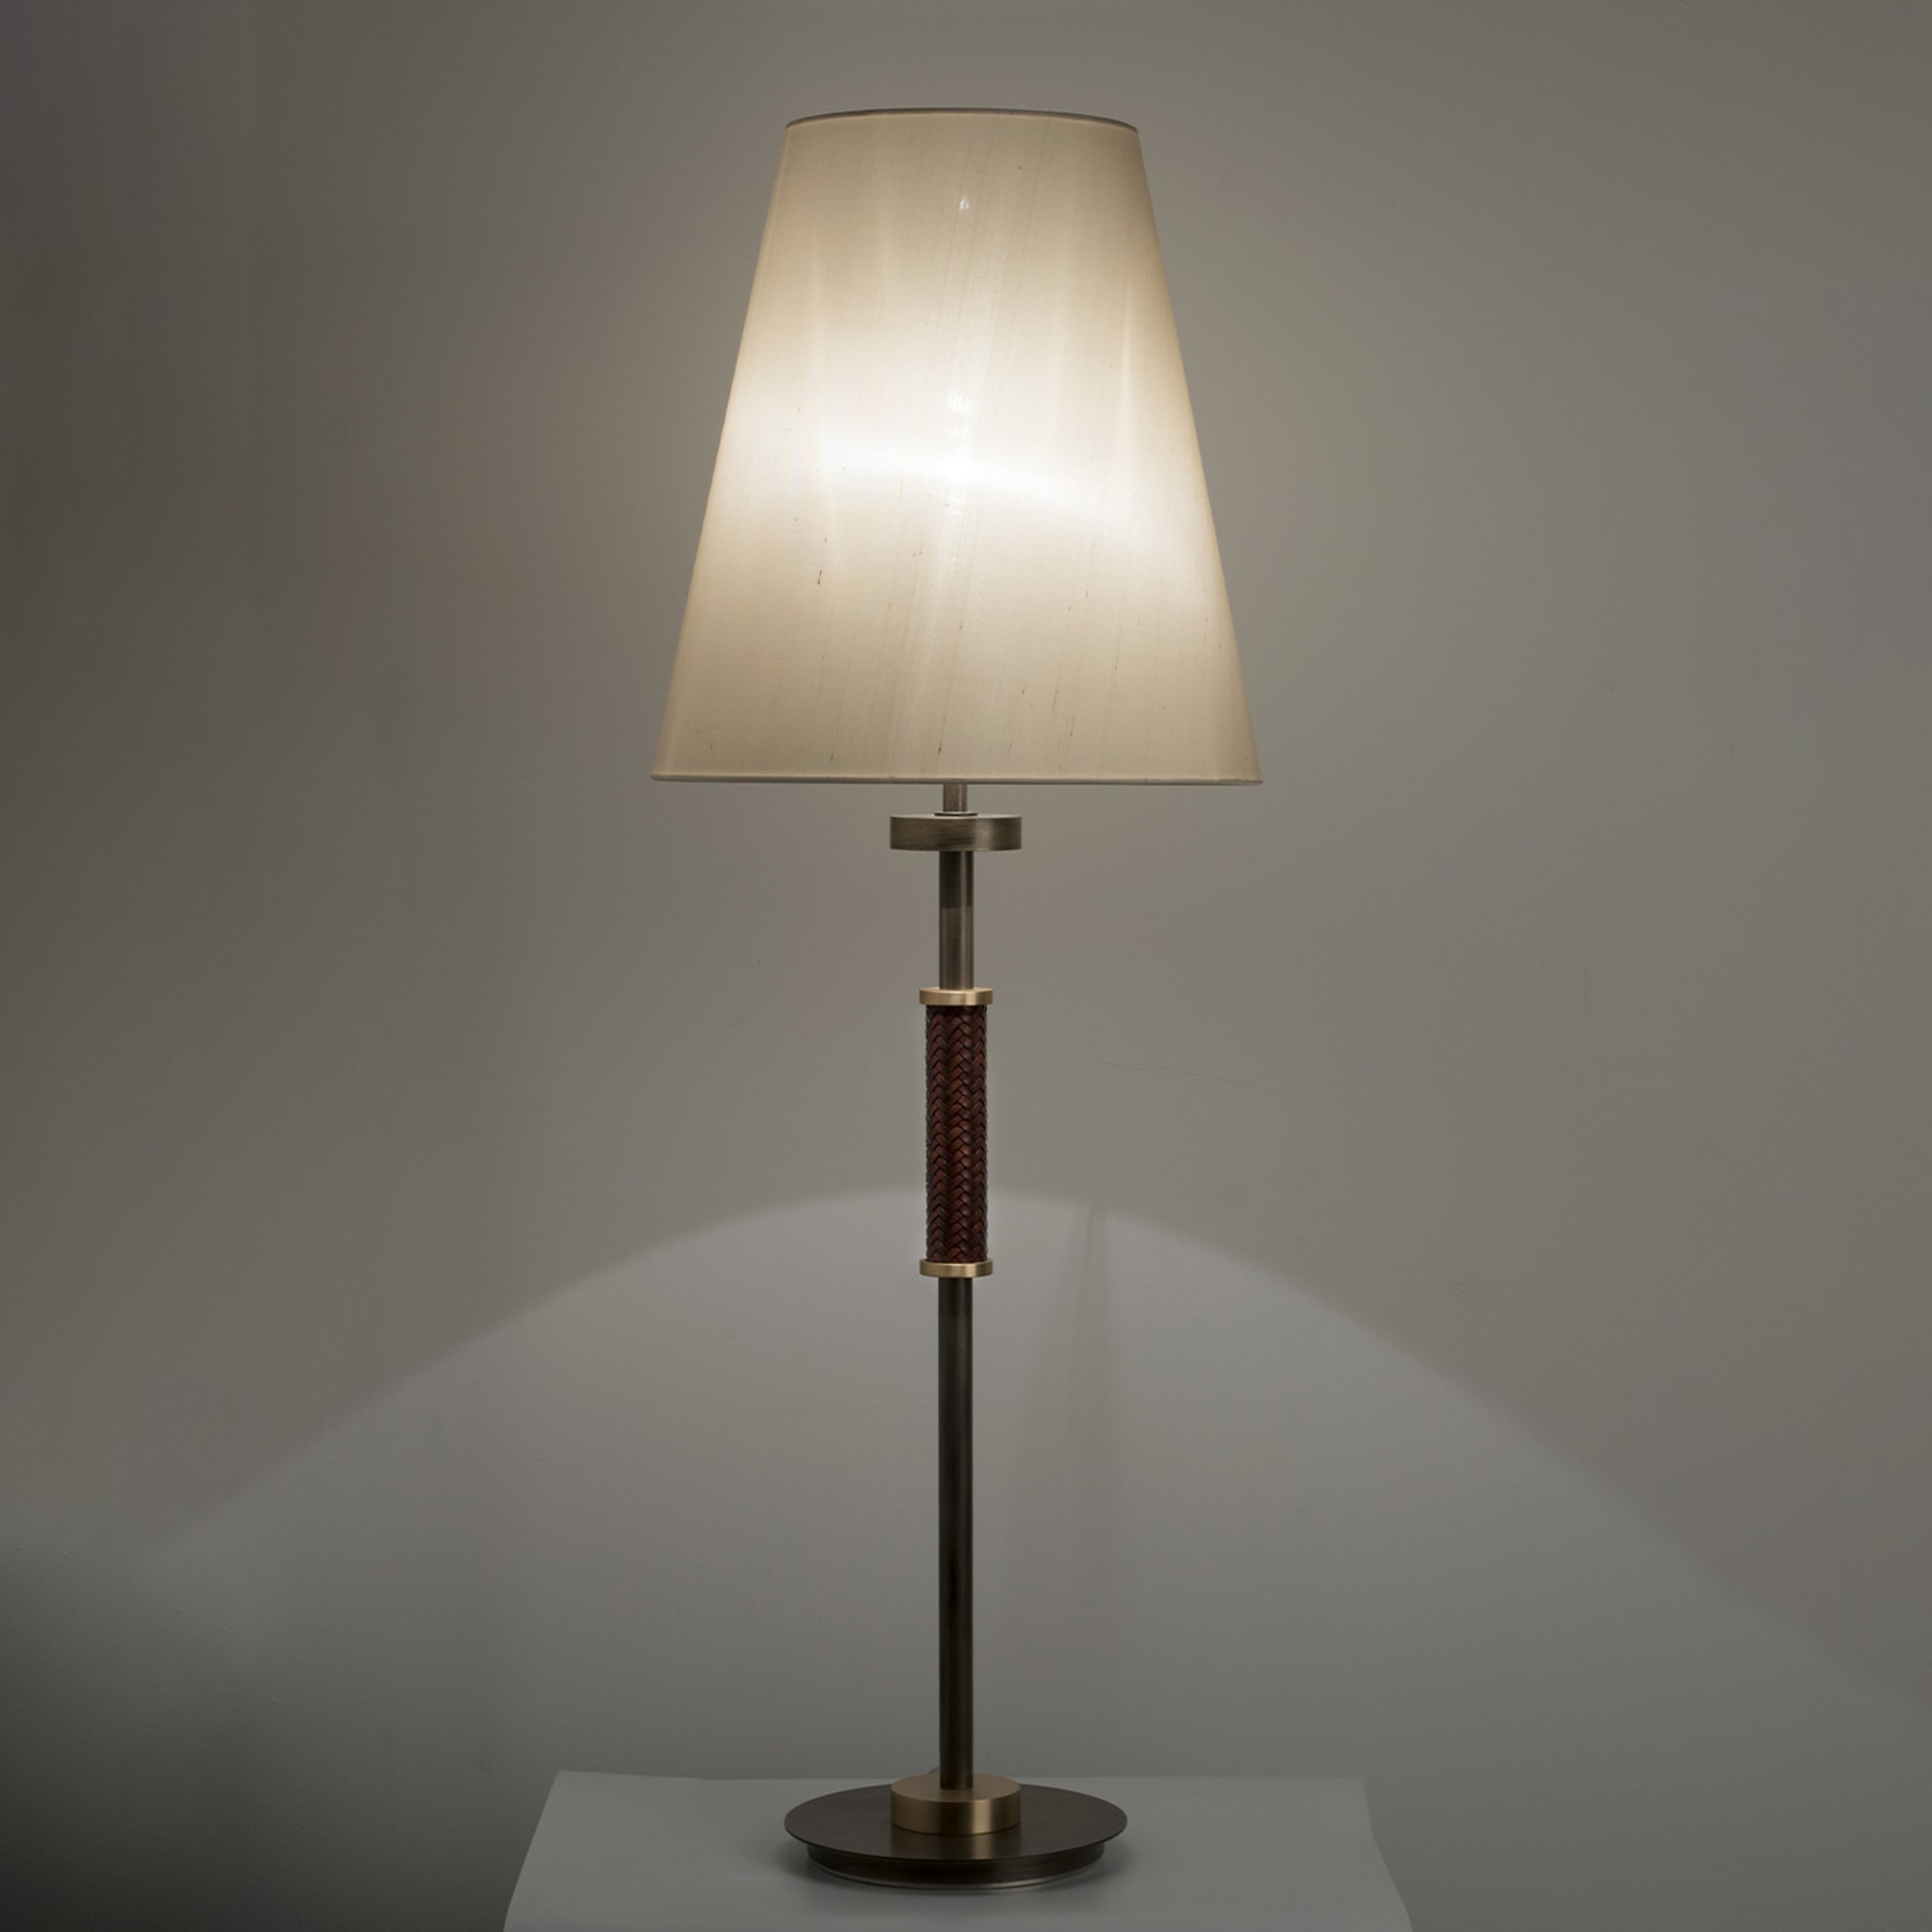 Dew Table Lamp By Patrizia Garganti #1 - Alternative view 3